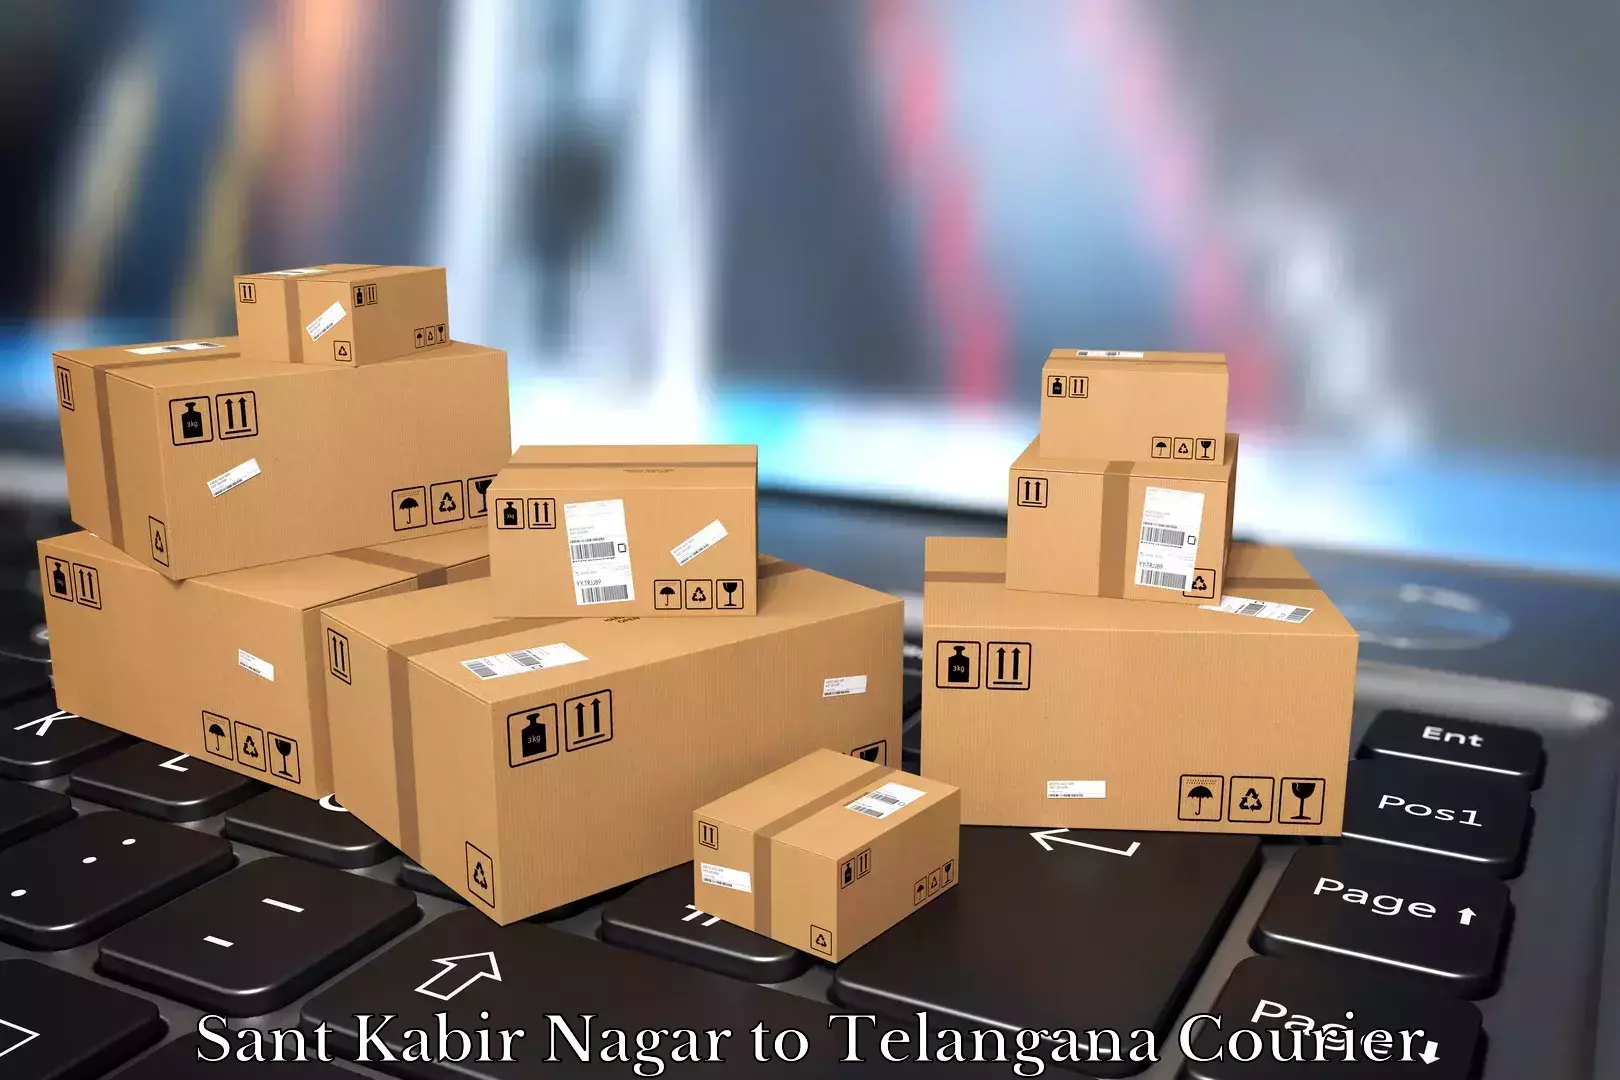 Moving and packing experts Sant Kabir Nagar to Yellareddy